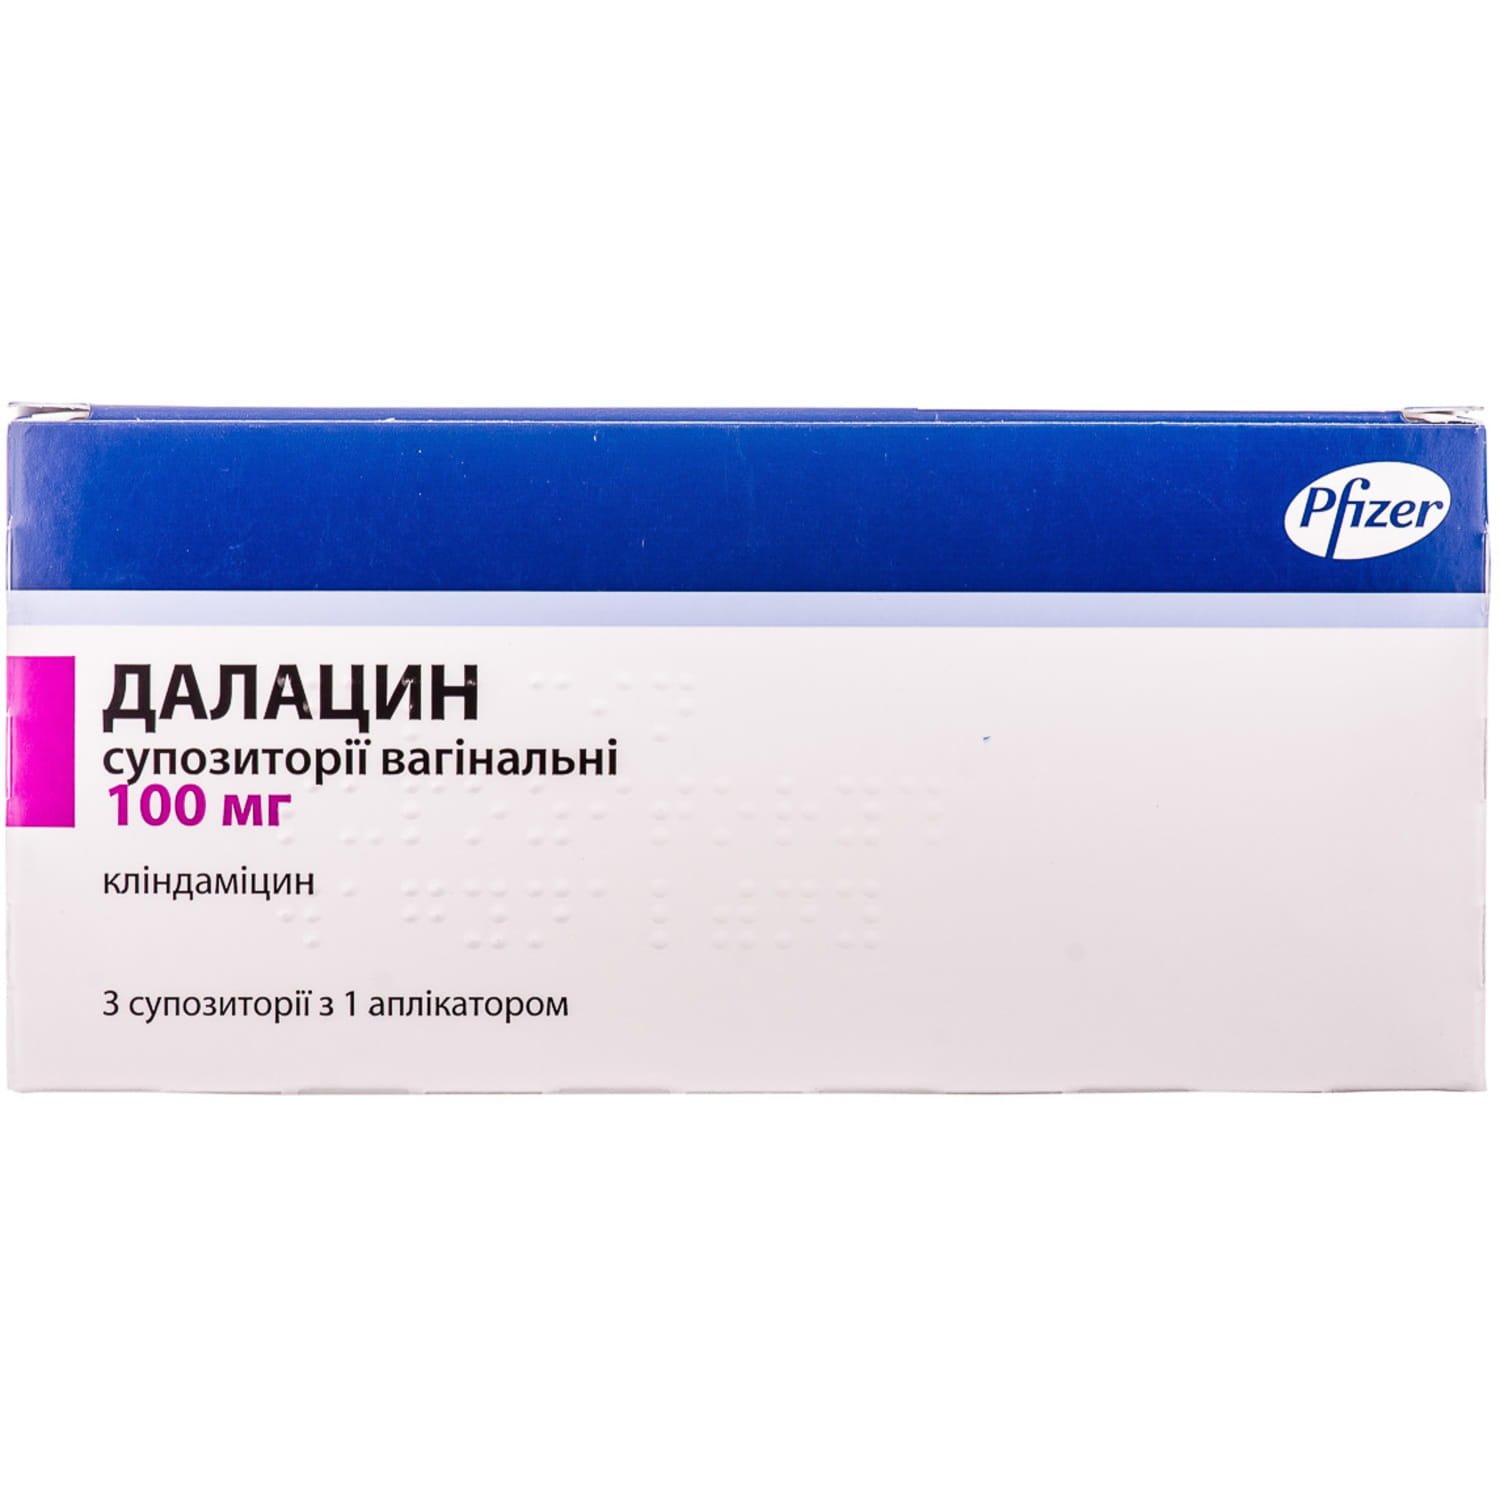 Далацин суппозитории вагинальные по 100 мг, 3 шт.: инструкция, цена .